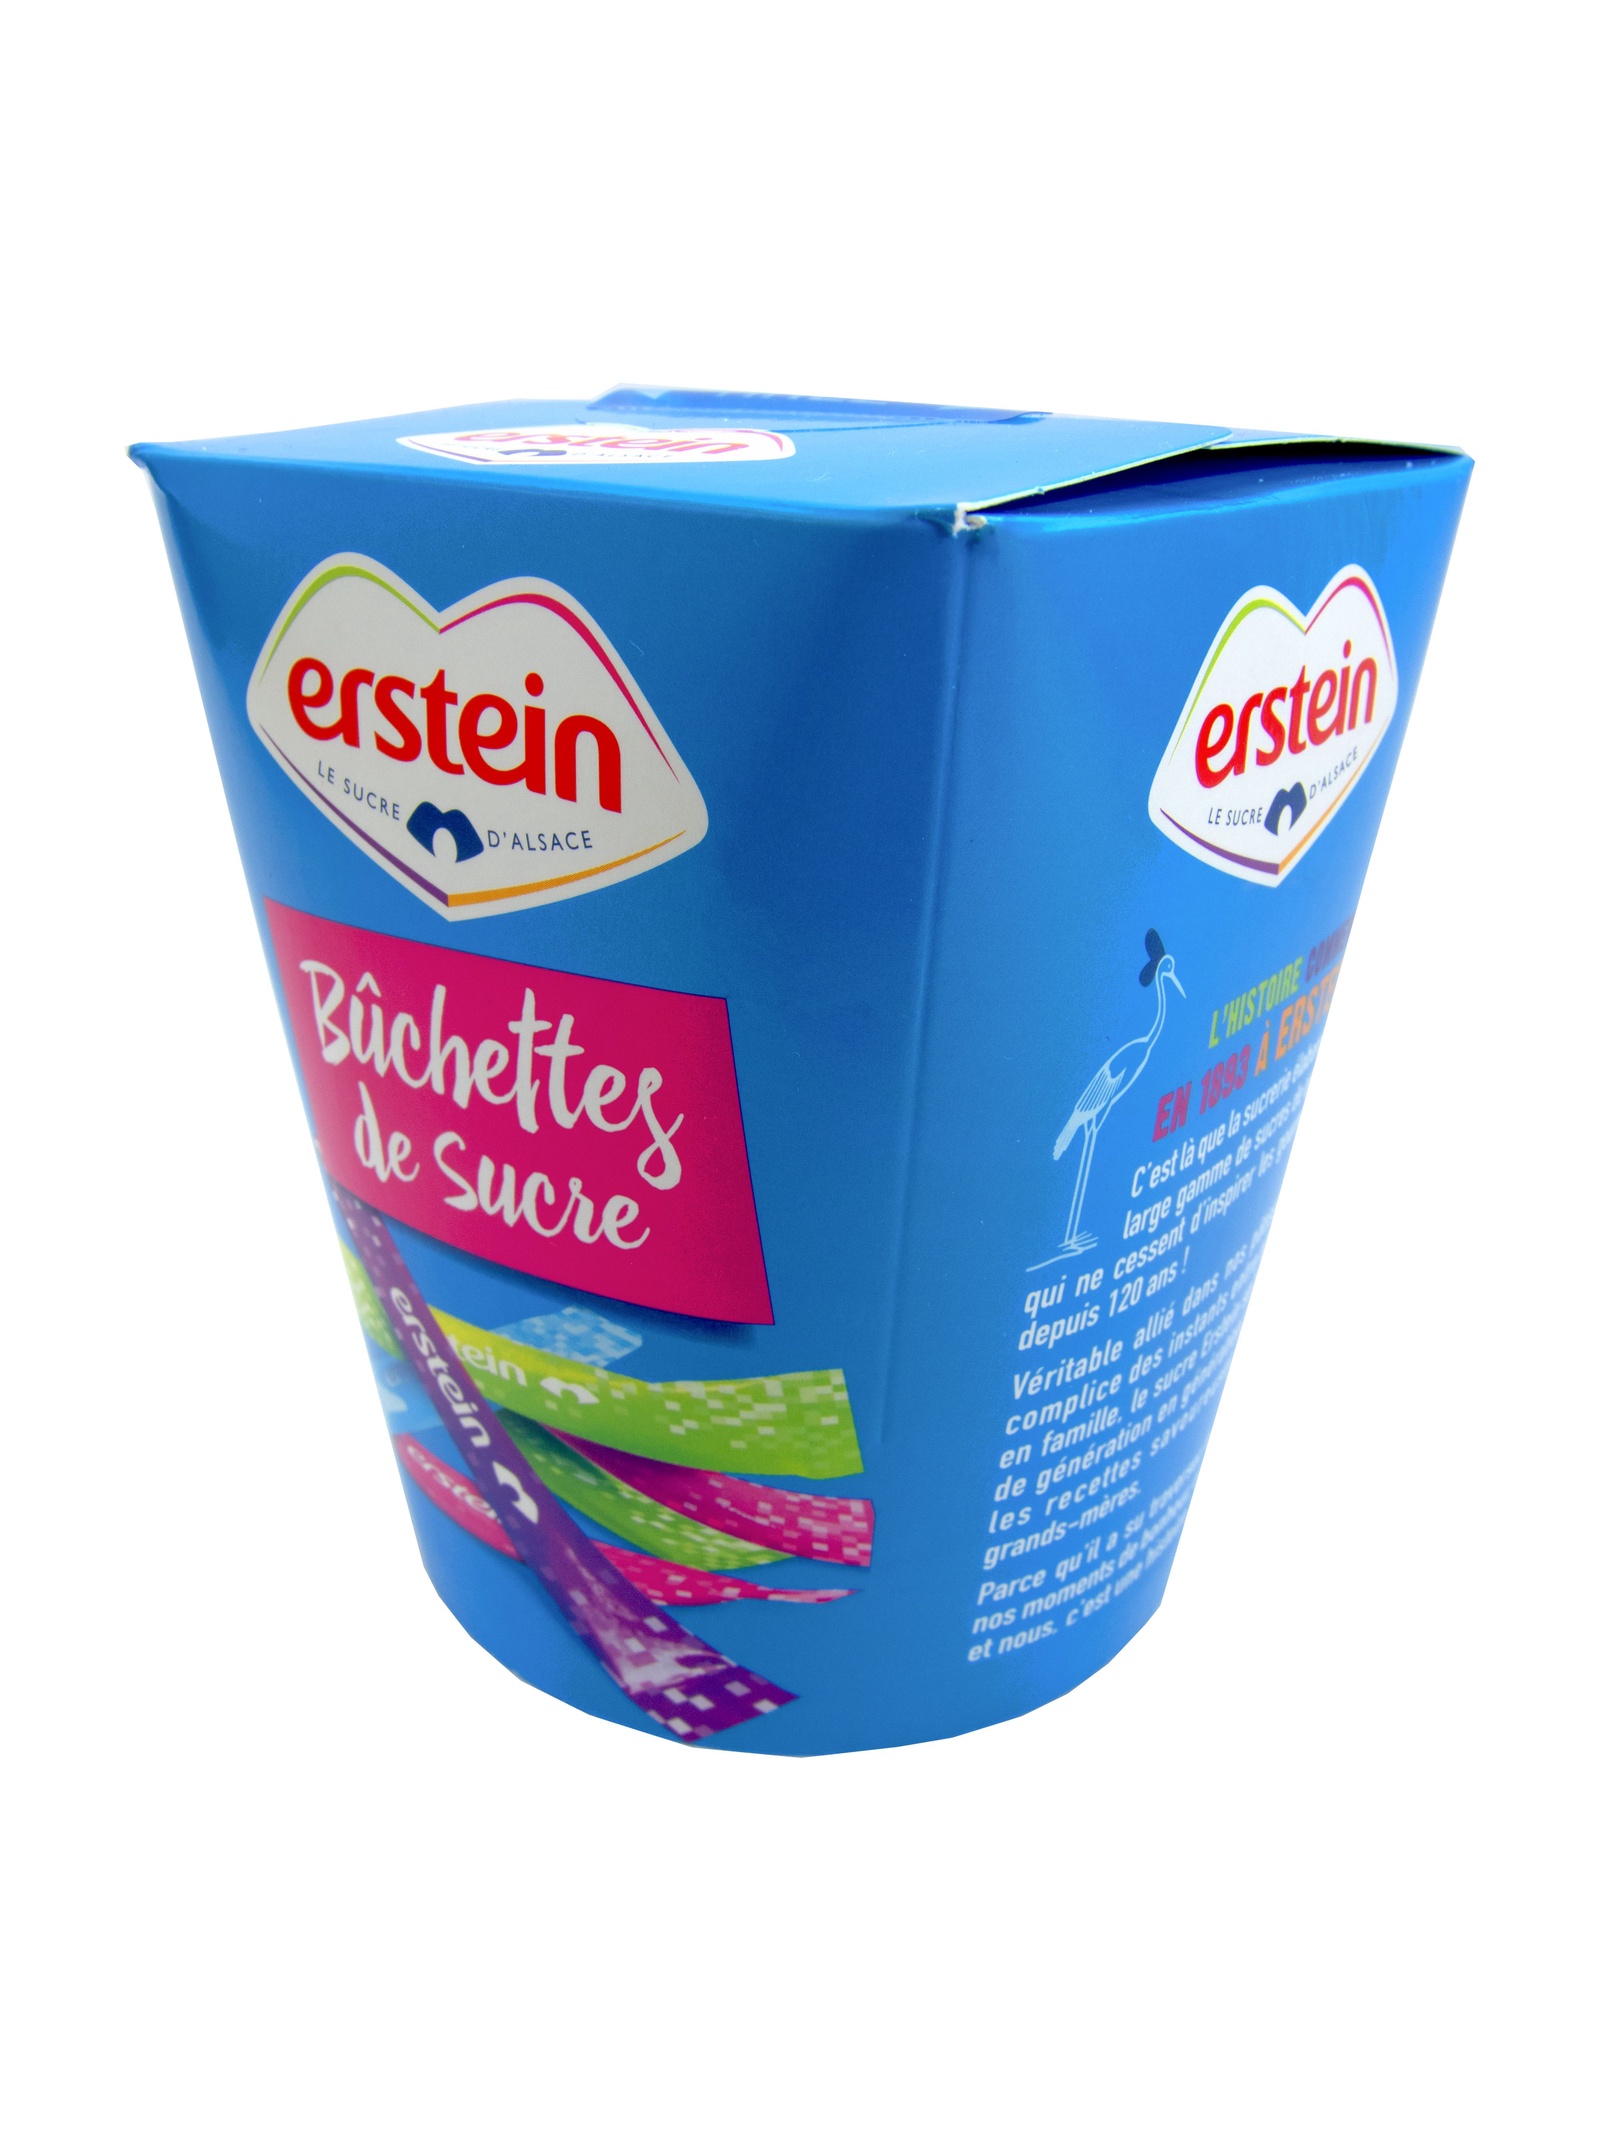 Сахар Erstein порционный в индивидуальных пакетиках 375г, Франция